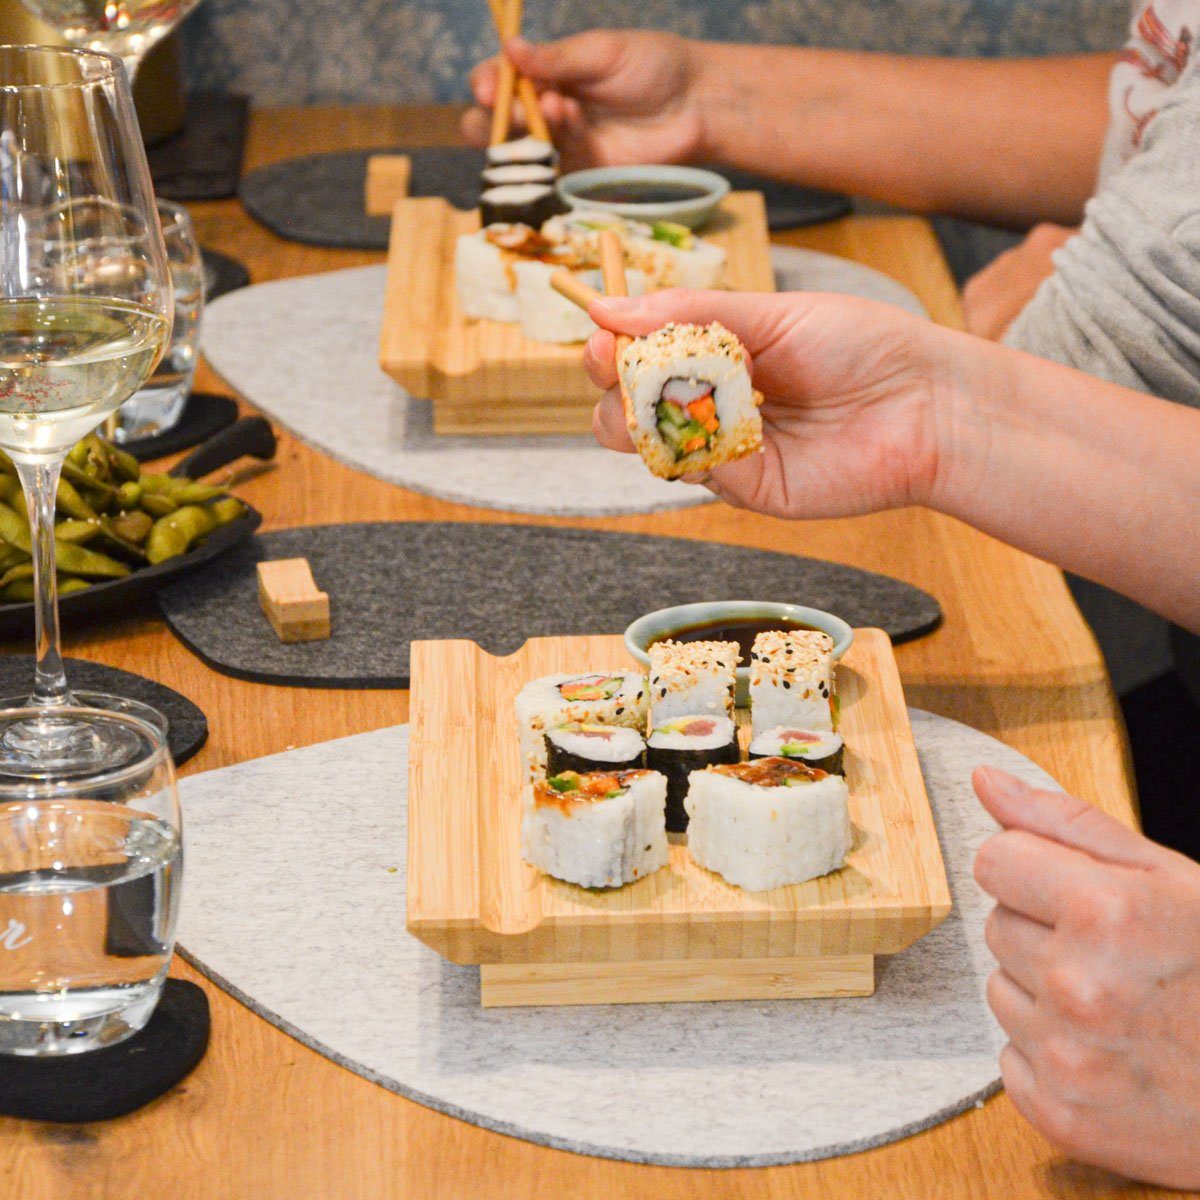 DuneDesign Servierplatte 4x Japanisches Sushi (Set, 20-tlg), Servierplatten, Brett für Personen Komplettset Holz, 4 27x16x4